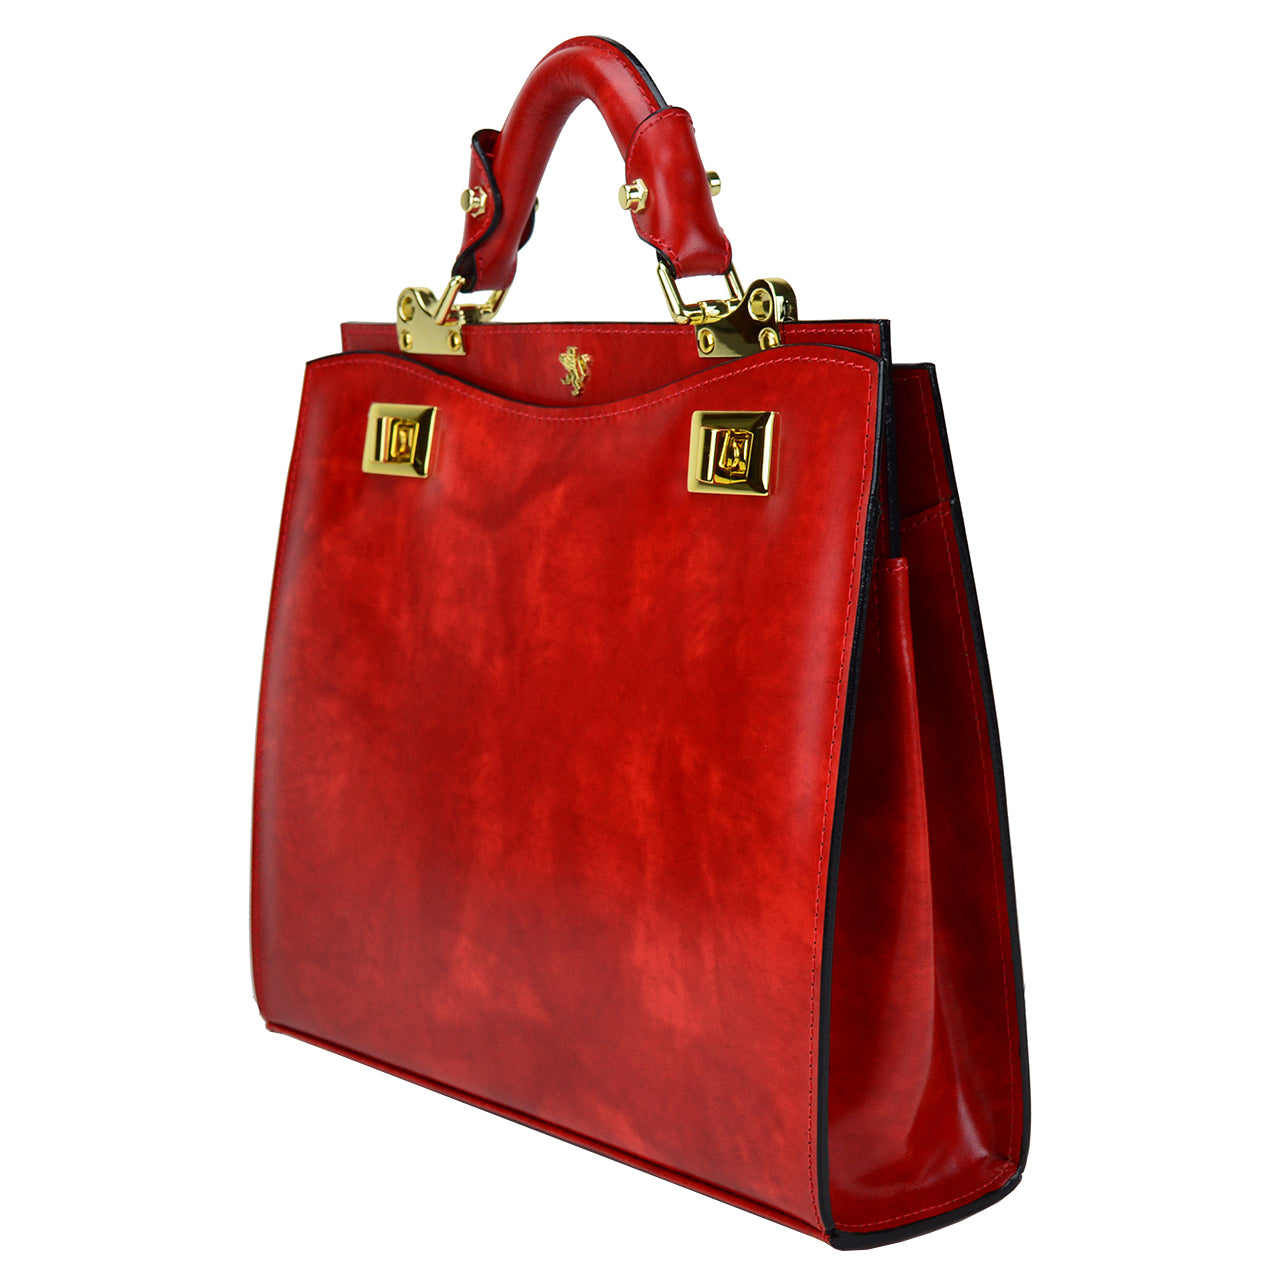 Pratesi Anna Maria Luisa de' Medici Medium Lady Bag in genuine Italian leather - Brunelleschi Leather Mustard